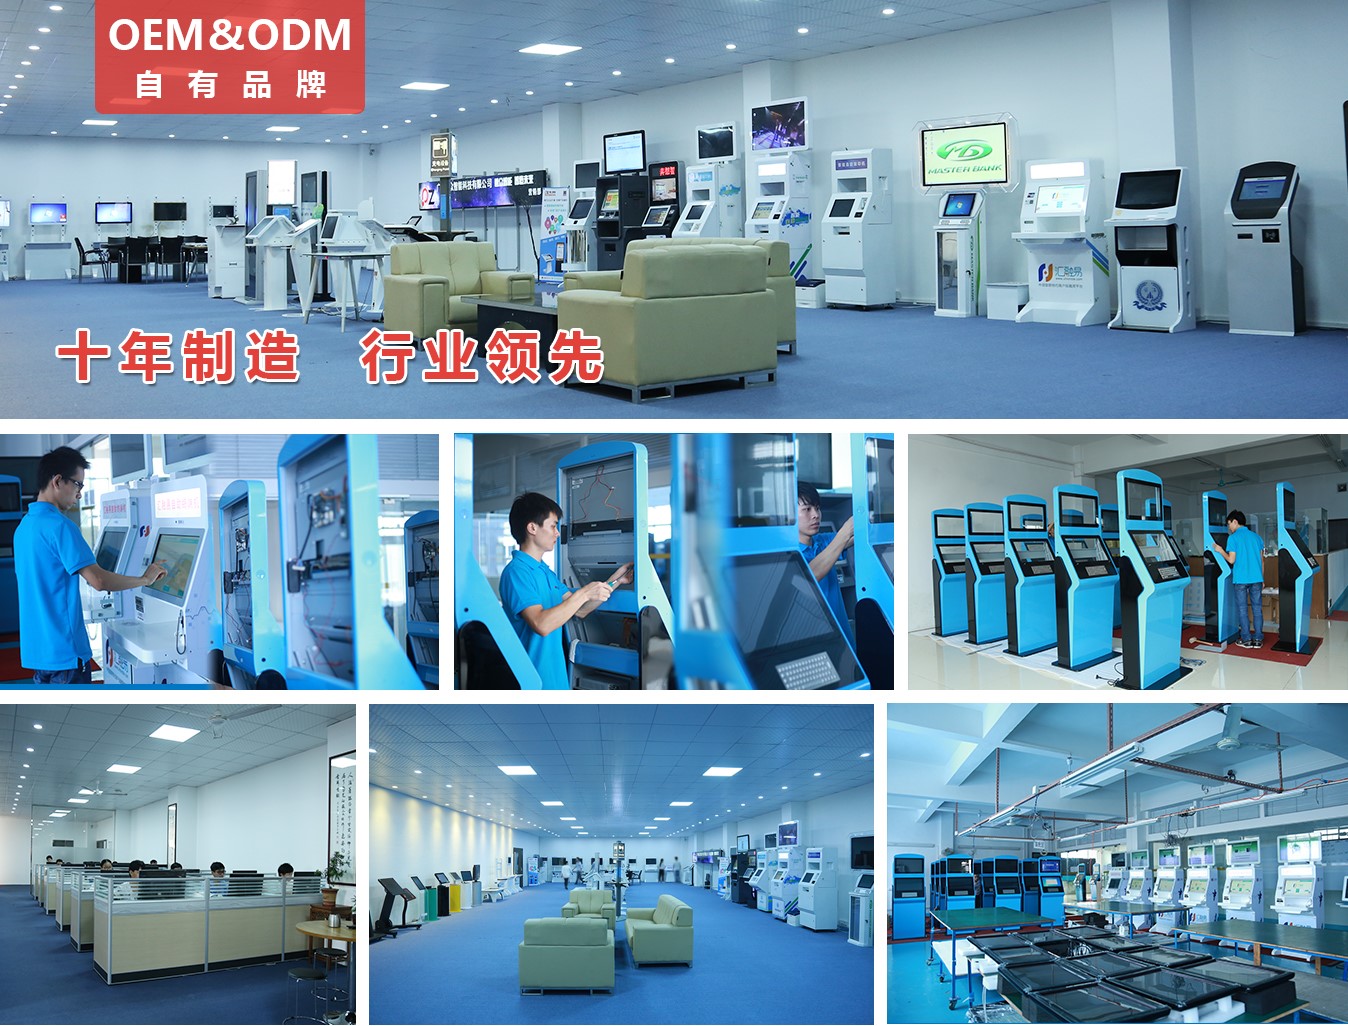 55寸壁挂式广告机PZ-55BE--广州磐众智能科技有限公司